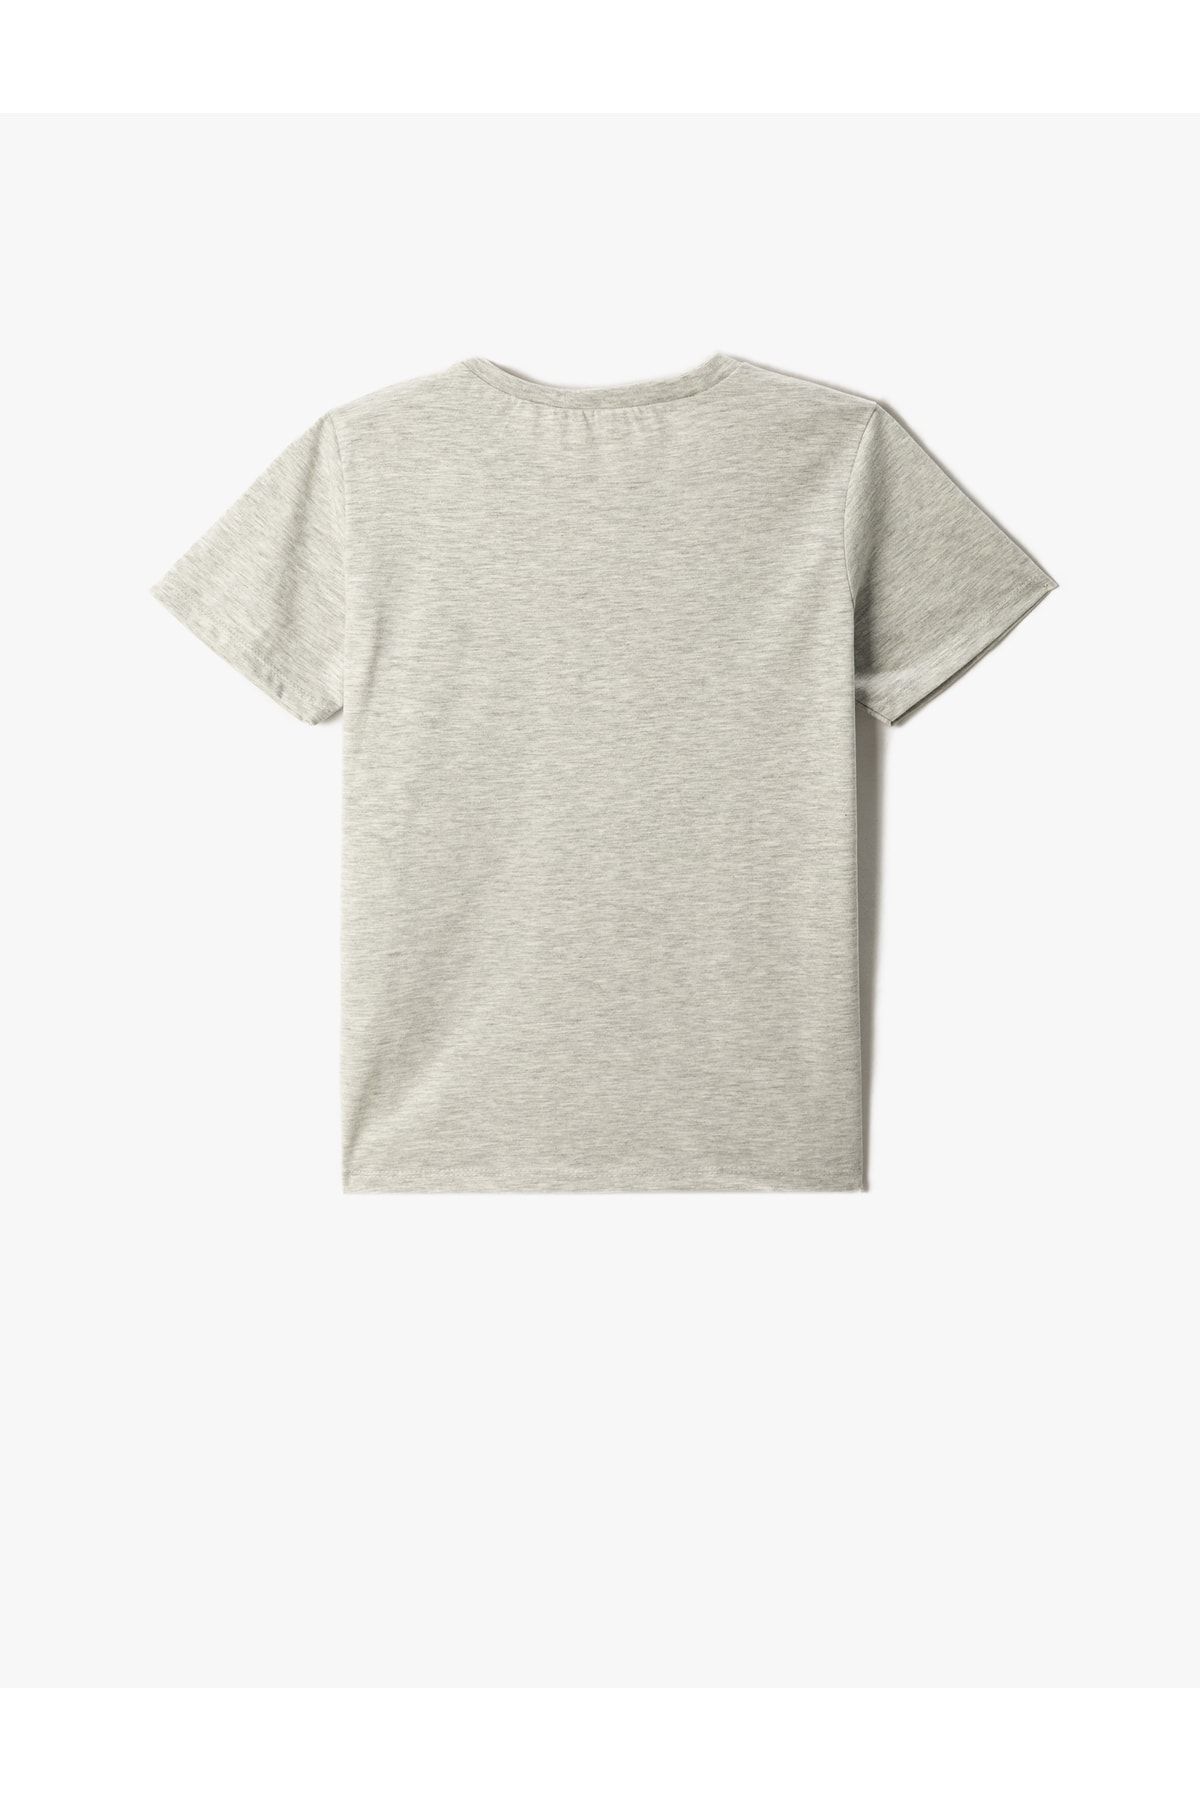 Koton تی شرت آستین کوتاه چاپ شده یقه خدمه نخی